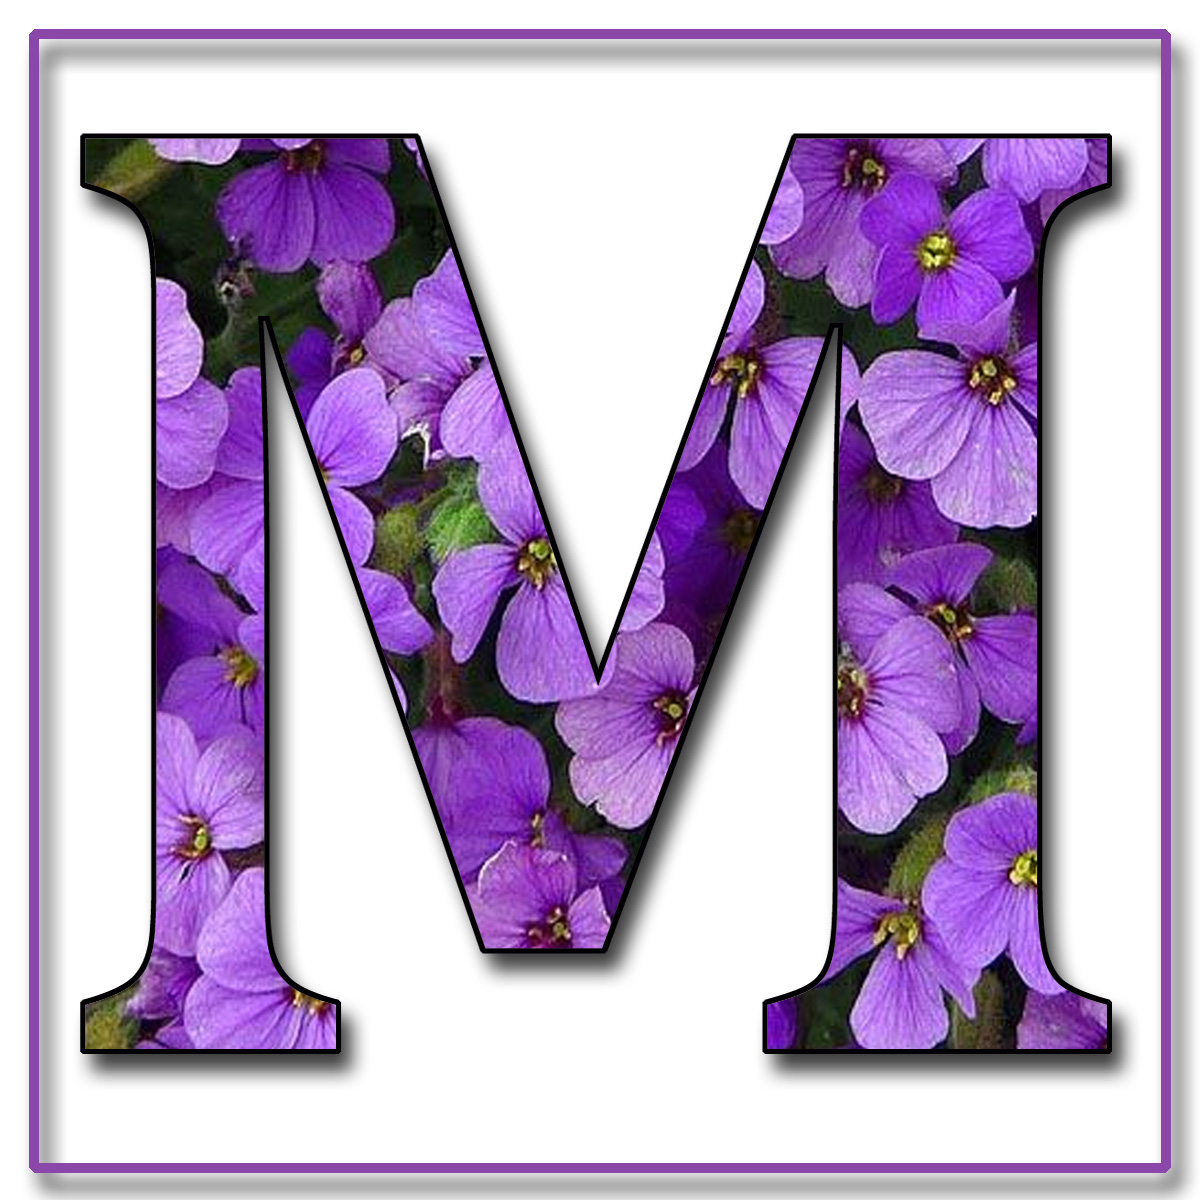 http://3.bp.blogspot.com/-RYGwneV7f1U/TjqnRmWDvRI/AAAAAAAAA7c/98_Hguc5Xp8/s1600/Capital+Letter+M+Free+Scrapbook+Alphabet+Purple+Flowers.jpg